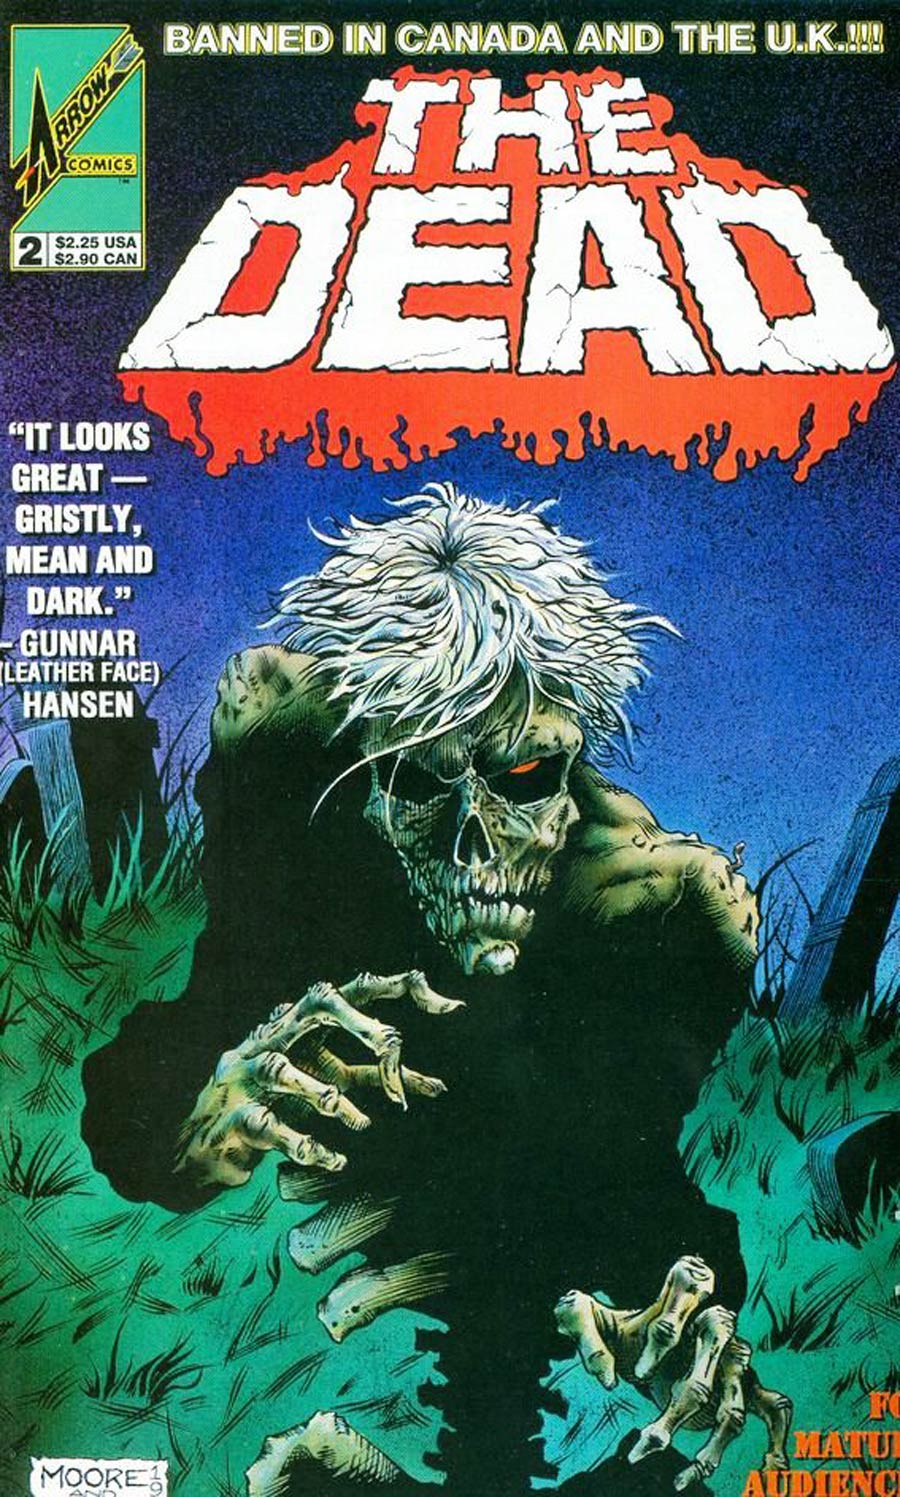 Dead (Arrow Comics) #2 Cover A